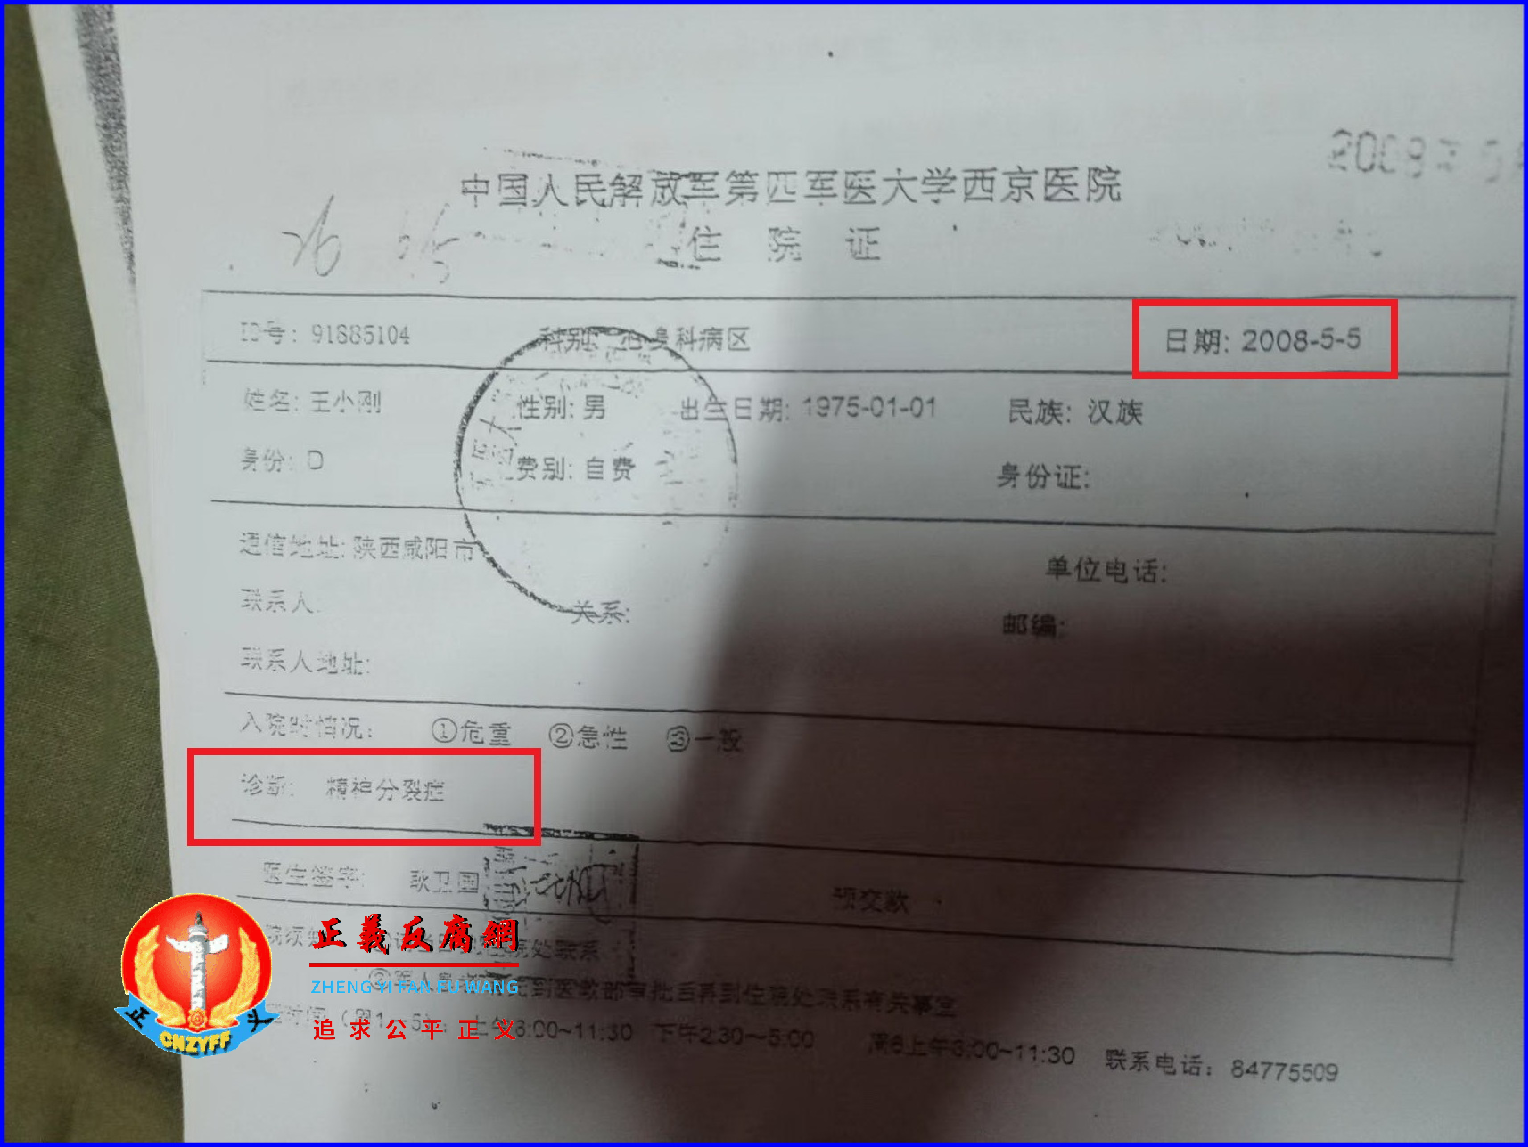 2008年5月5日，中国人民解放军第四军医大学西京医院出具诊断：精神分裂症。王小刚患精神病就医纪录。.png